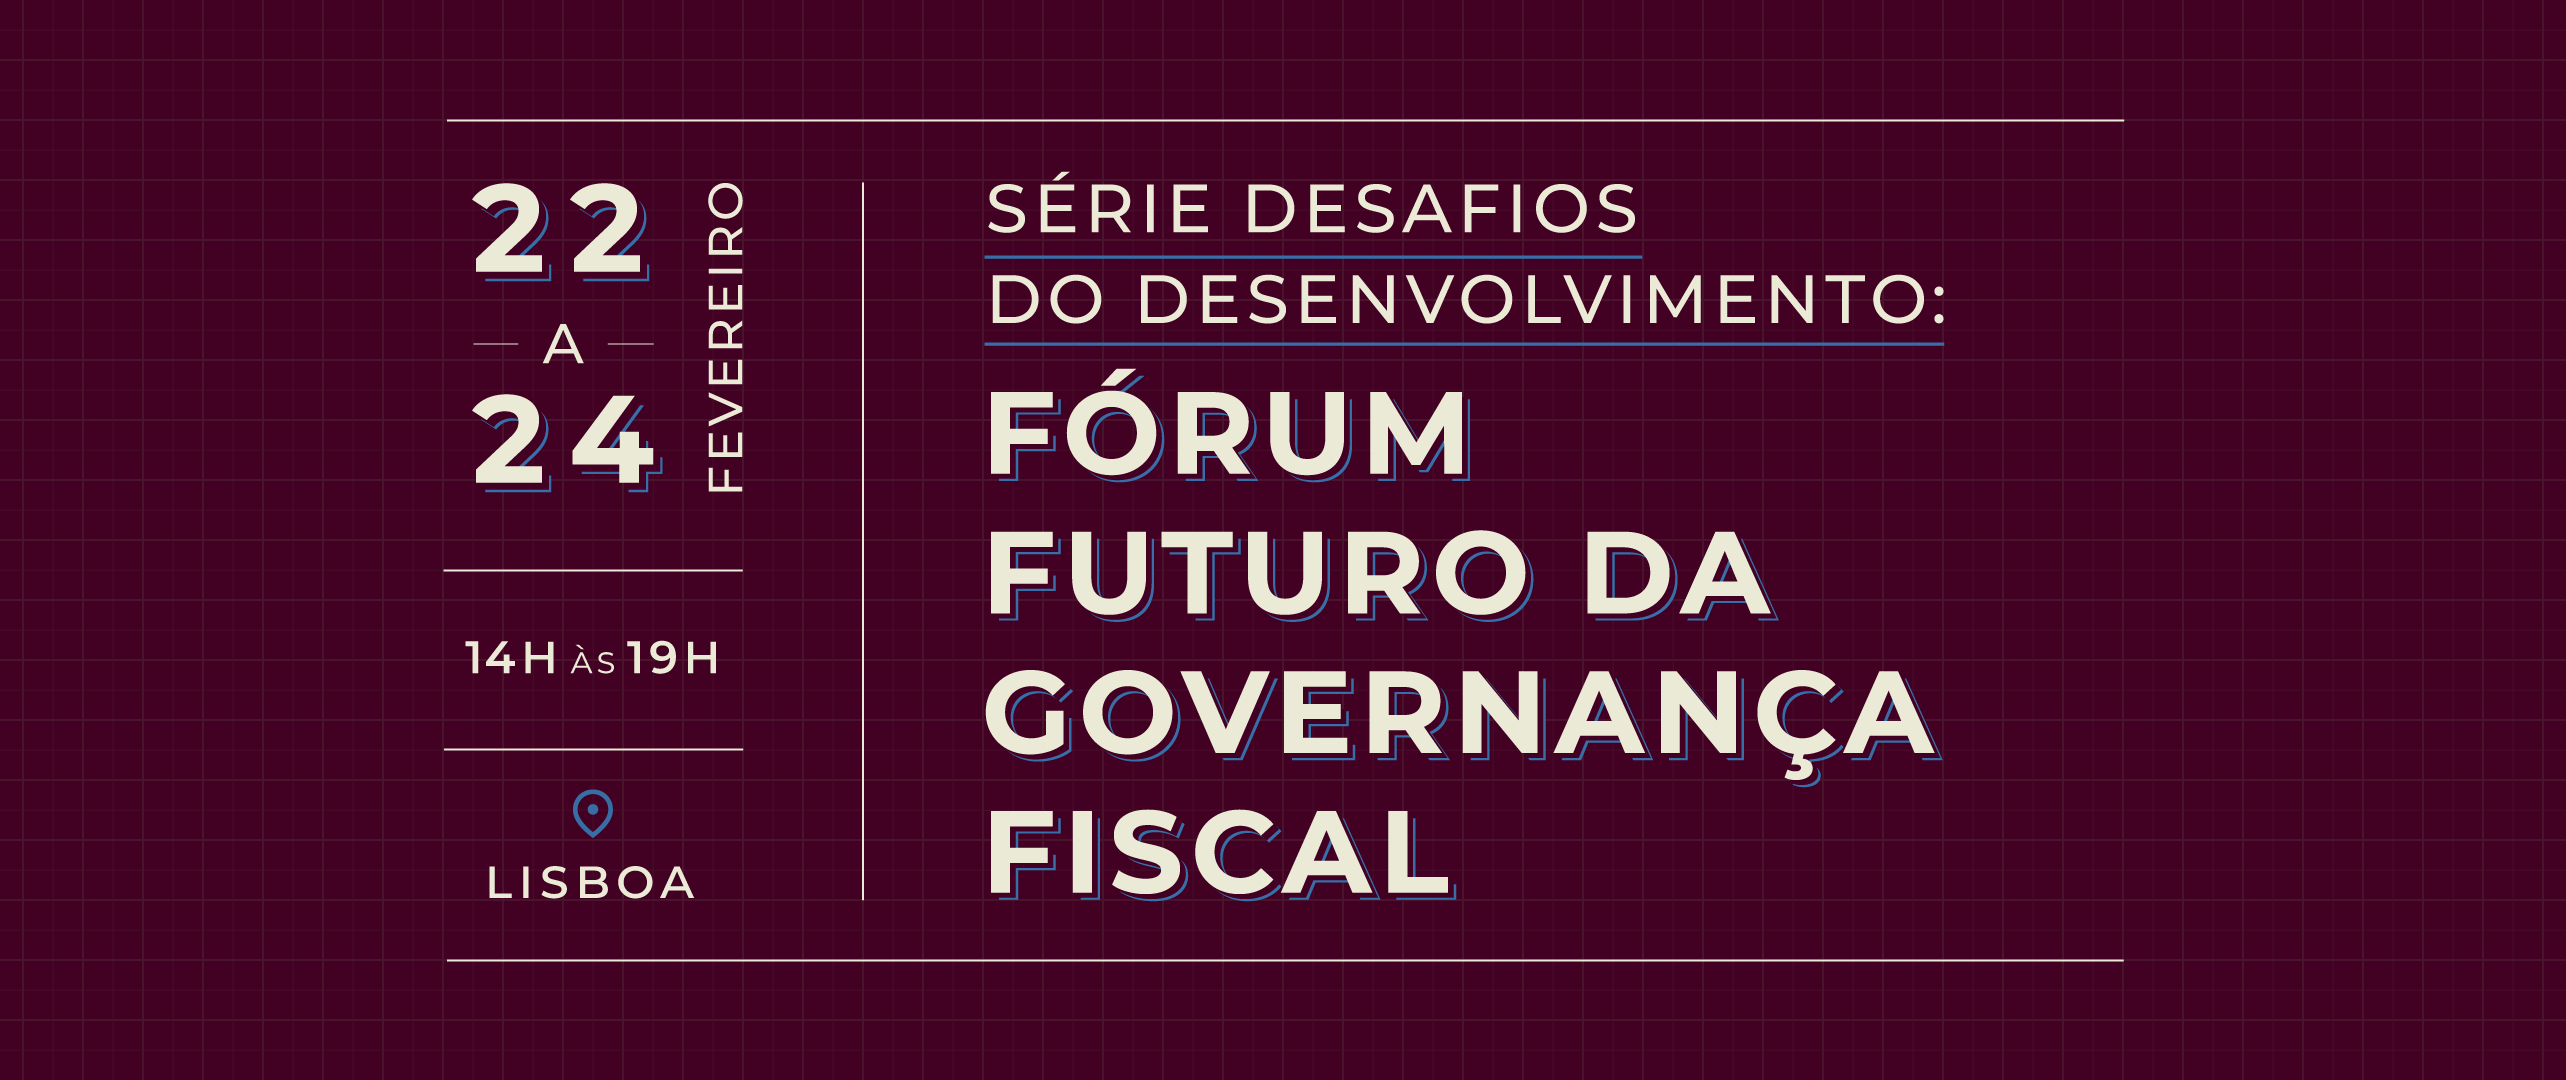 cover forum futuro da governanca fiscal